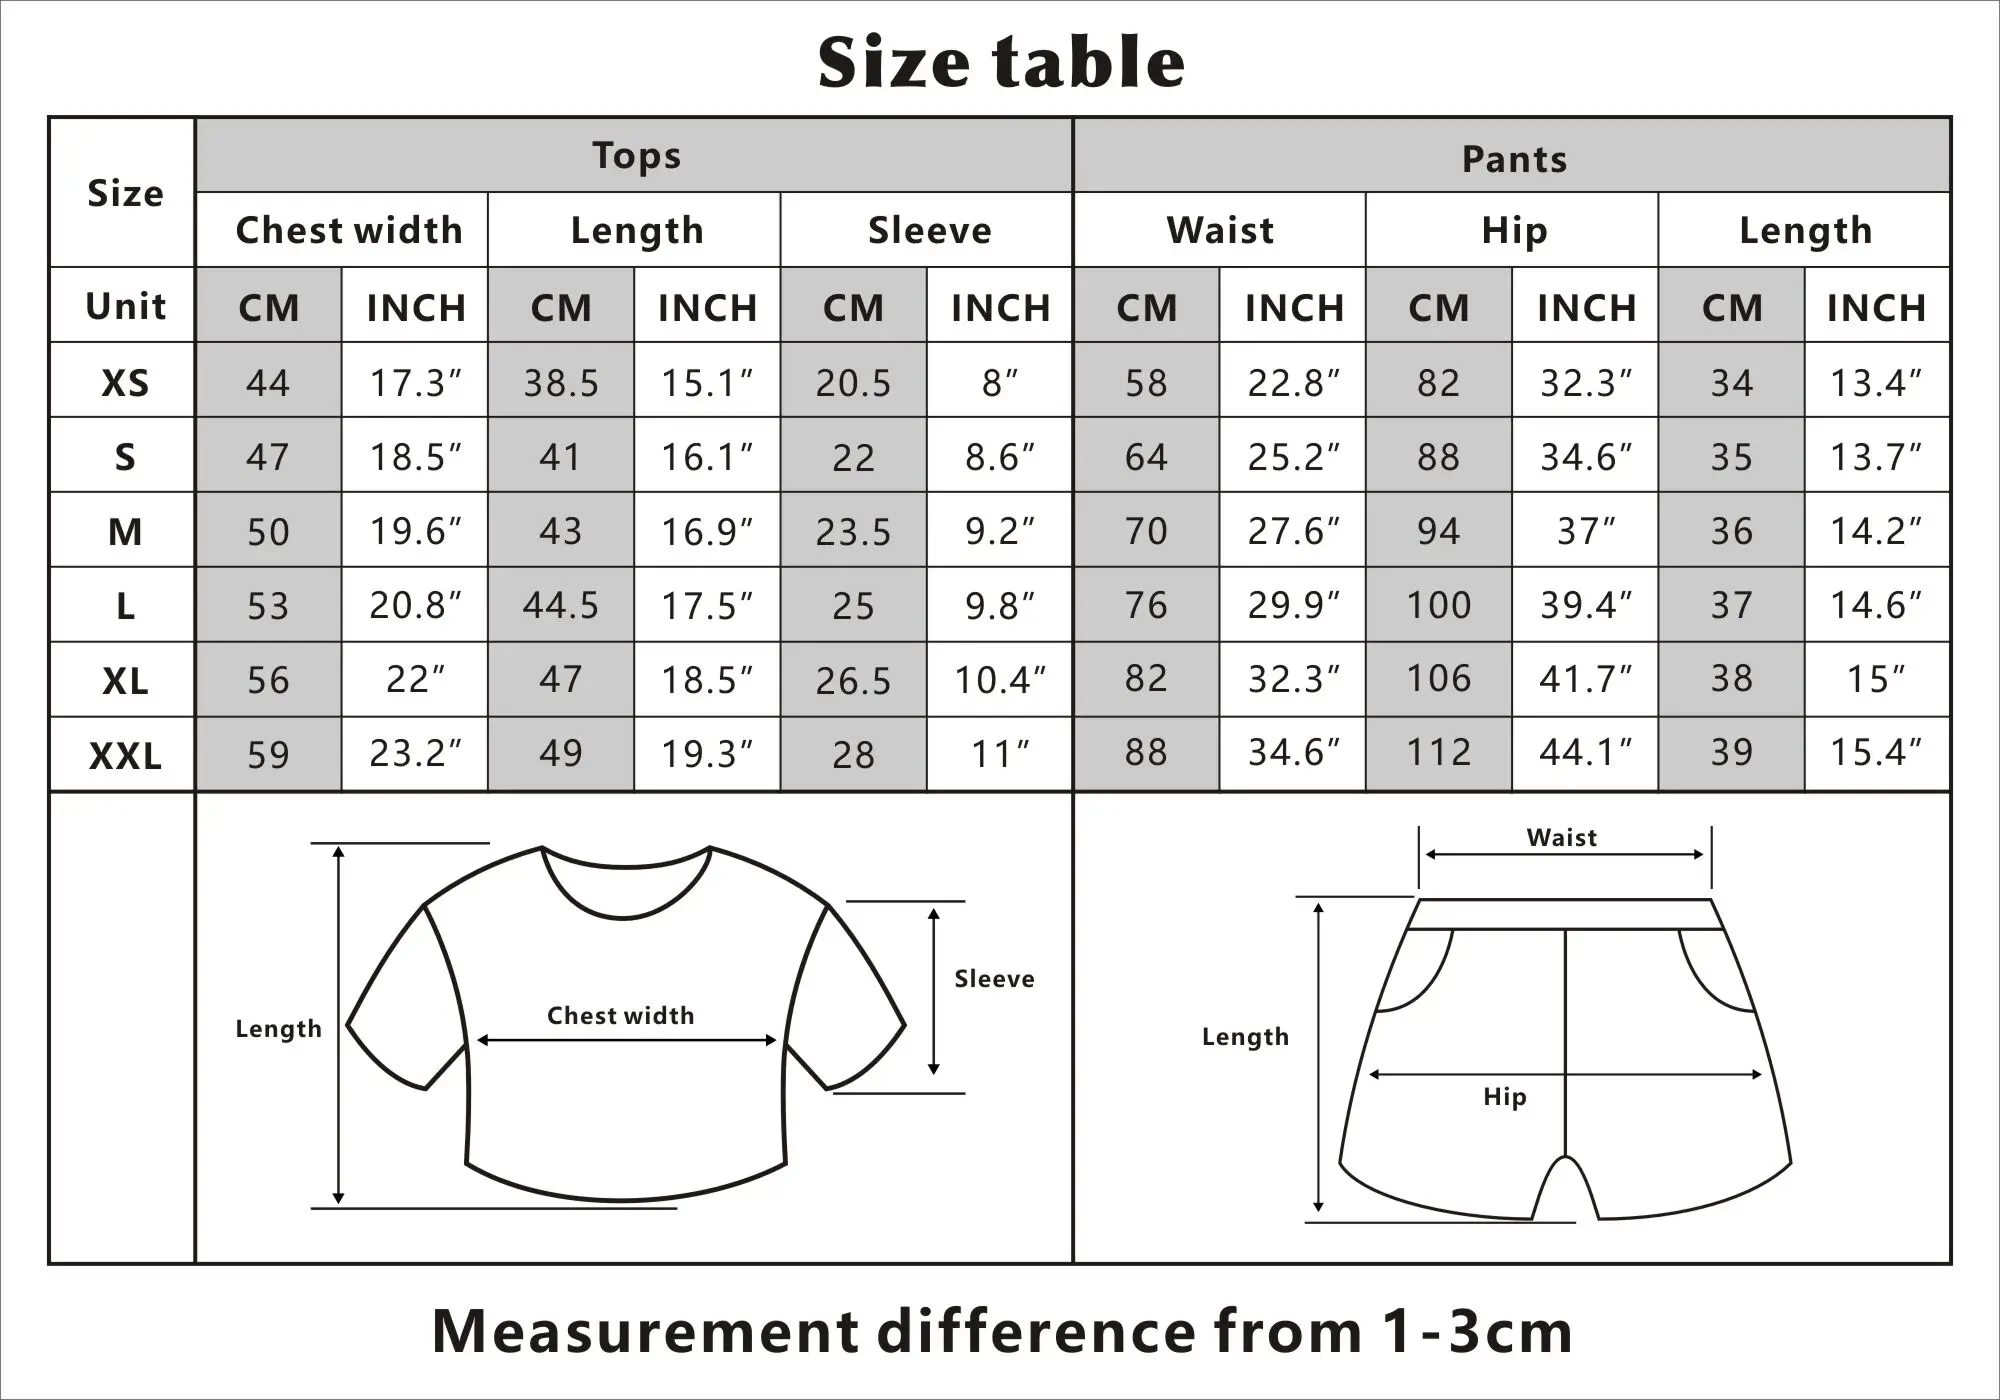 Странные Вещи Повседневный укороченный топ спортивный костюм женский комплект из 2 предметов летняя футболка с короткими рукавами + шорты